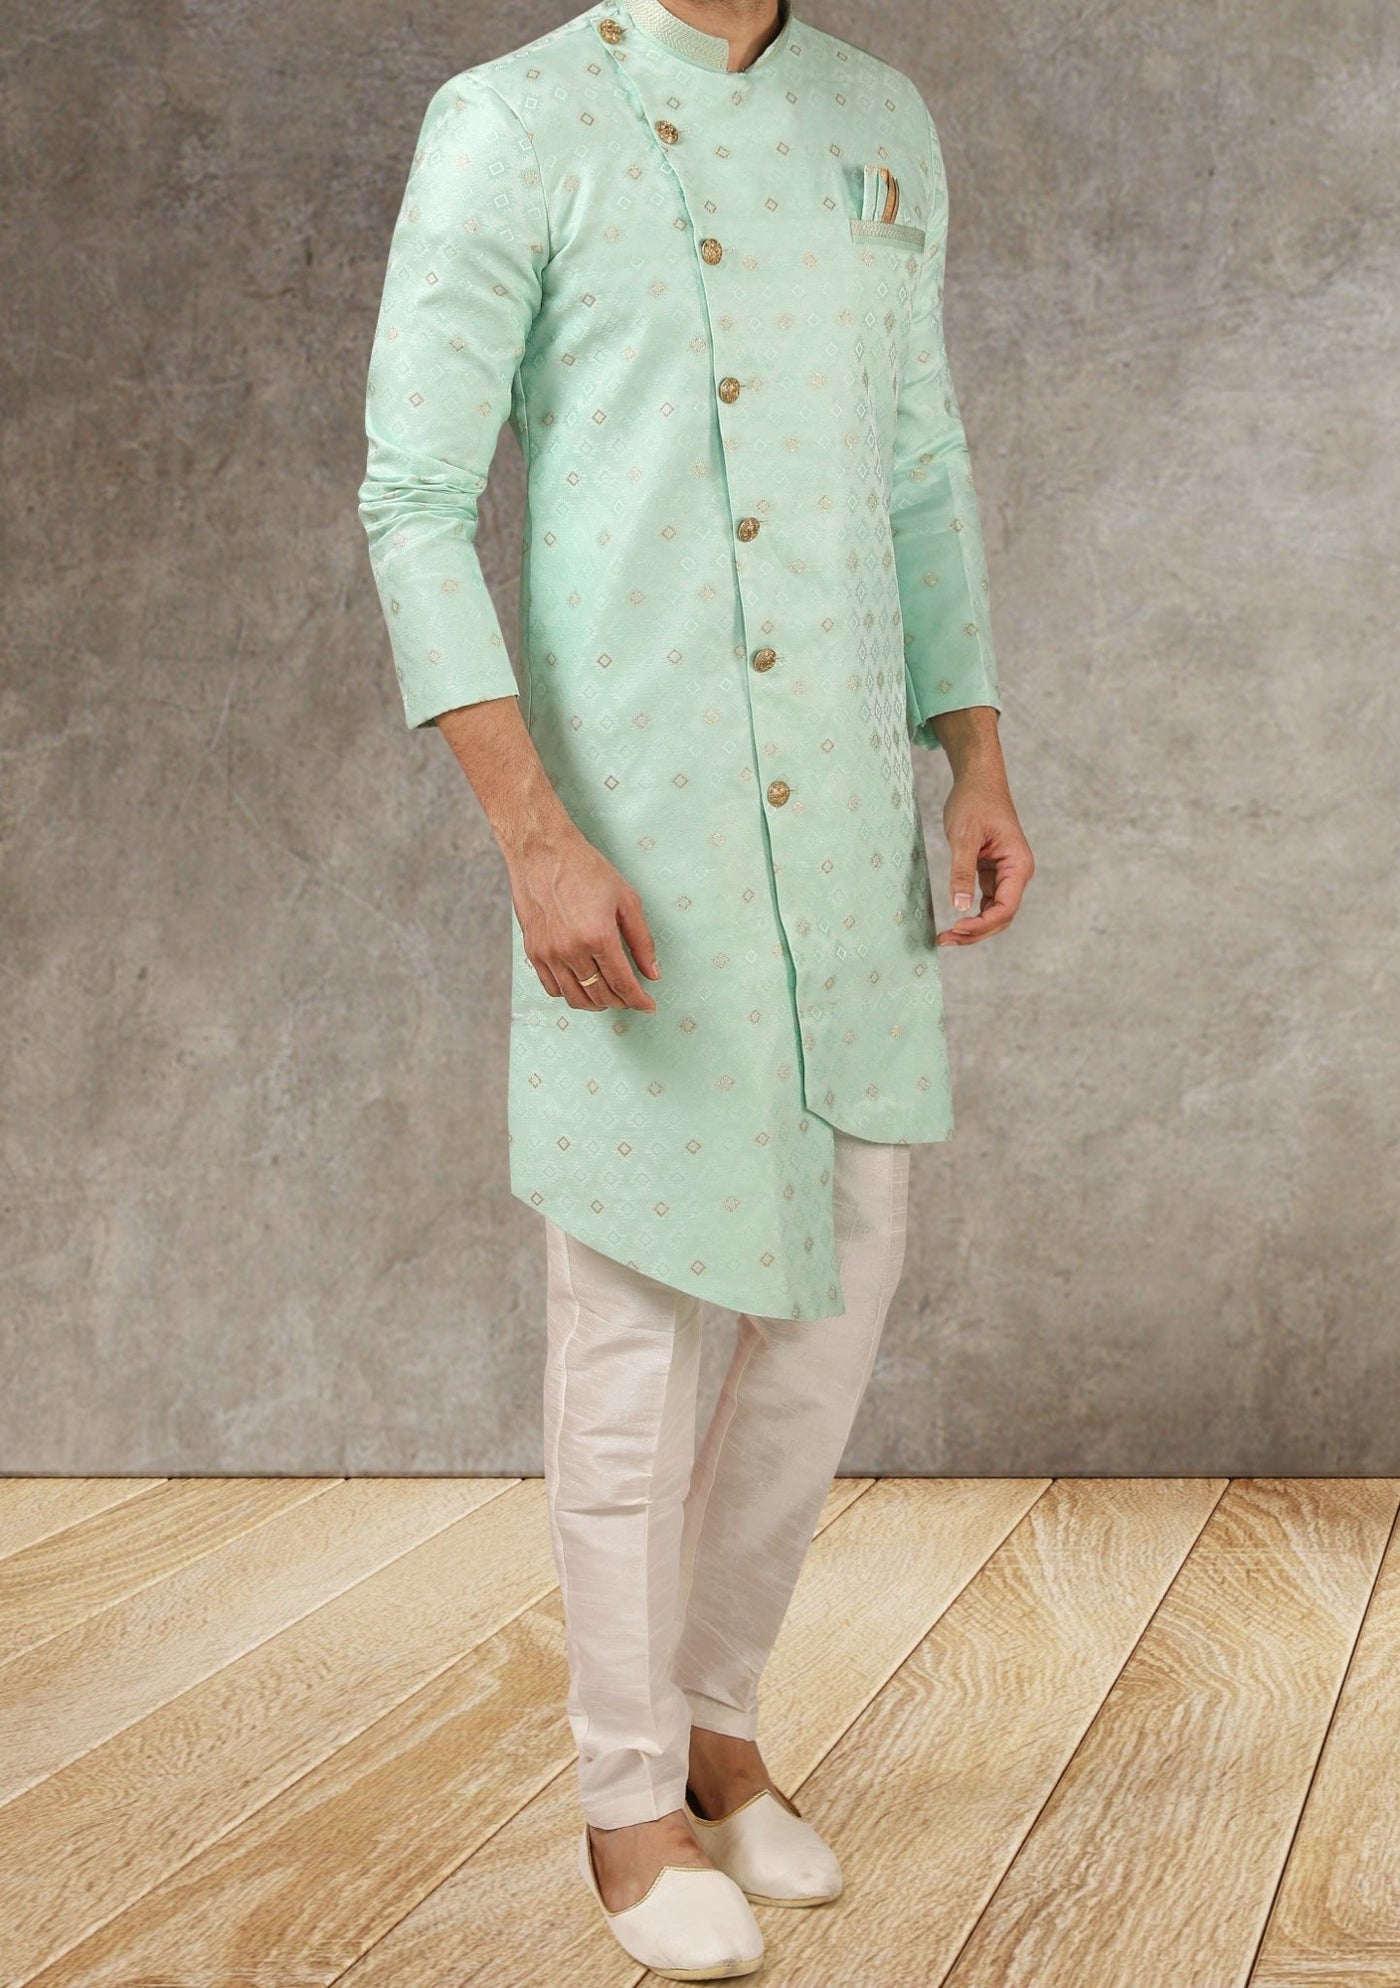 Men's Indo Western Party Wear Sherwani Suit - db20660